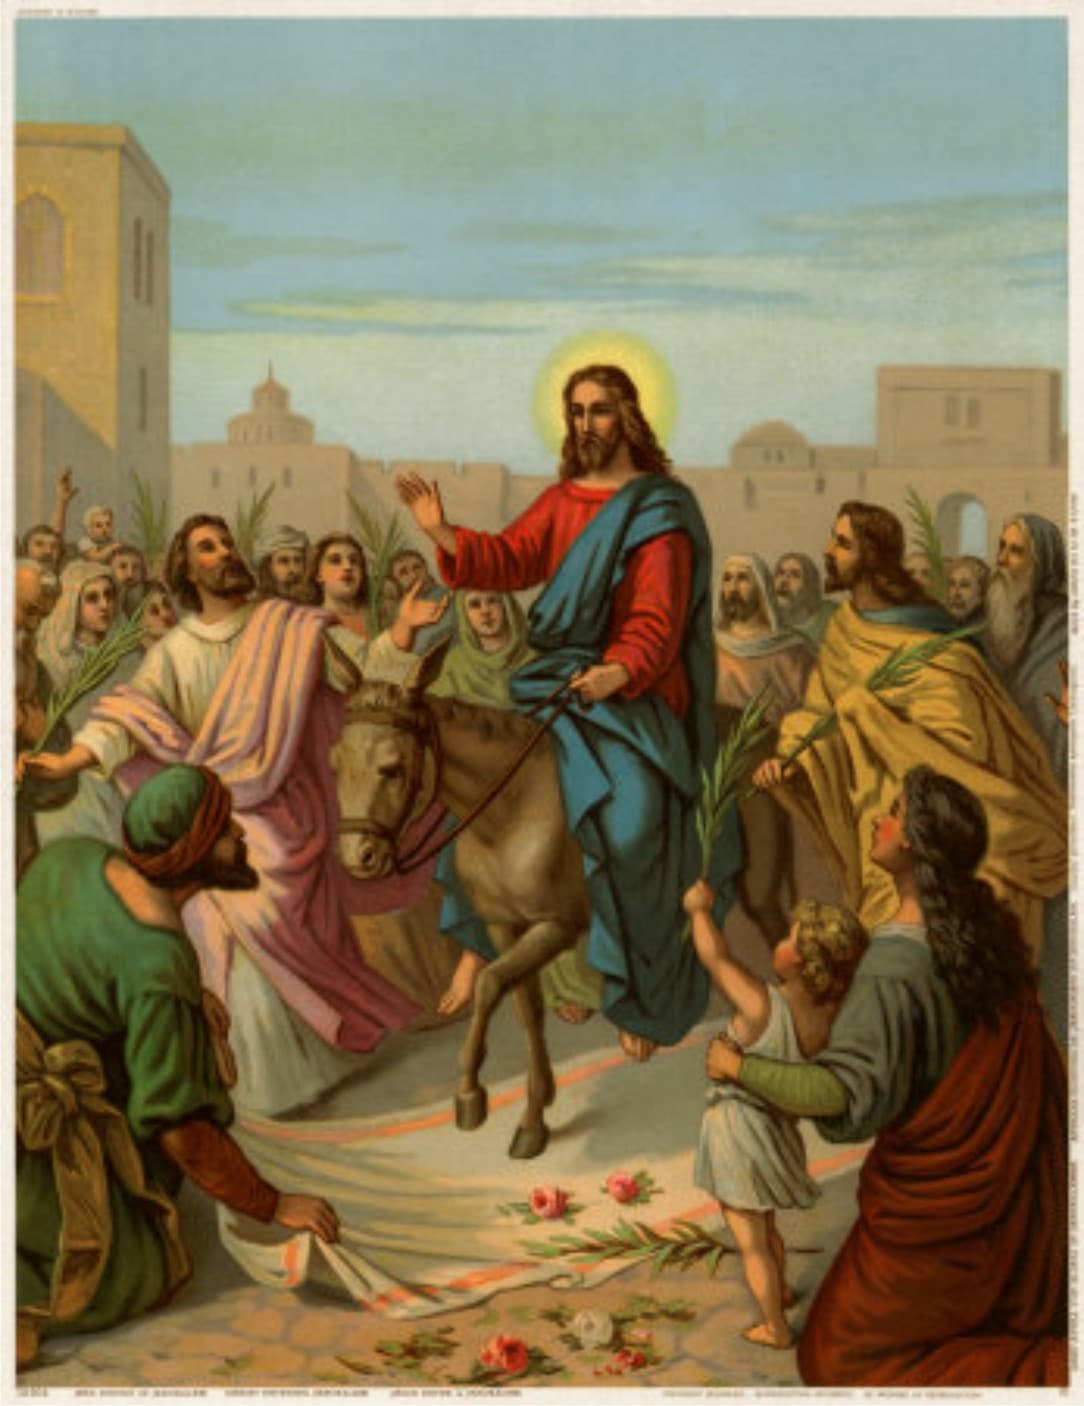 Lectio Divina: La entrada de Jesús en Jerusalén